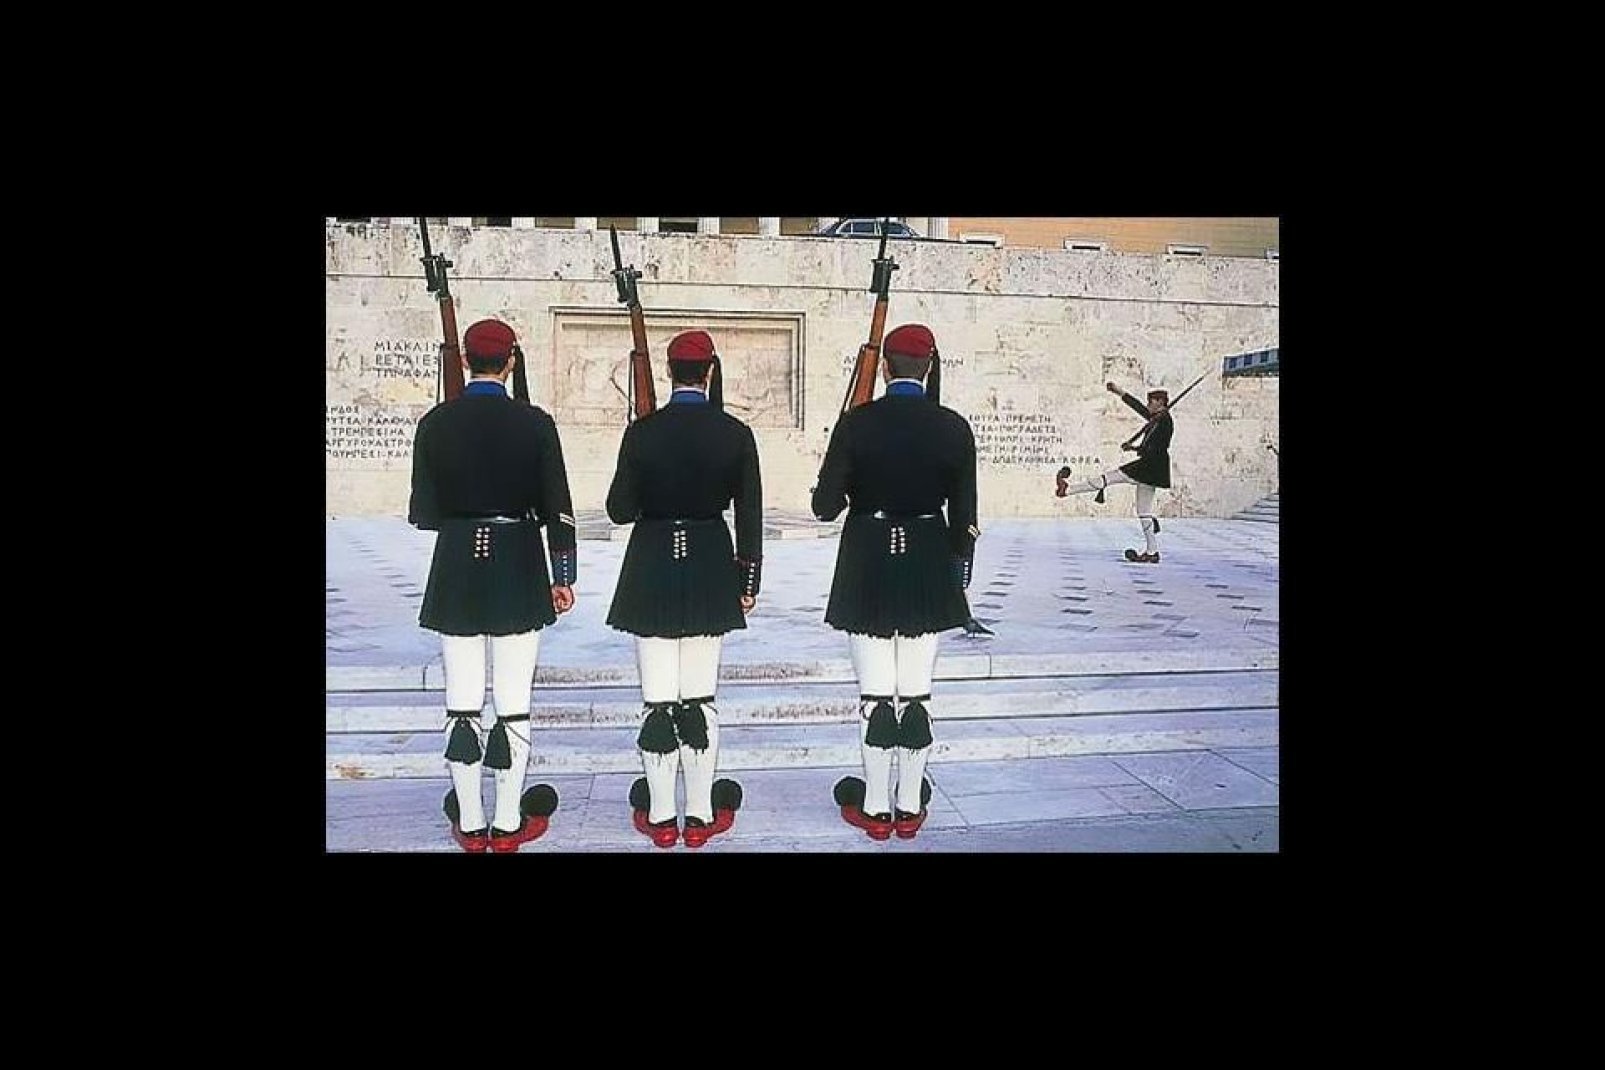 In Piazza Syntagma, ad Atene, gli Evzones sono di guardia di fronte al monumento del Milite Ignoto. Molti turisti si fermano ad osservare il caratteristico cambio della guardia